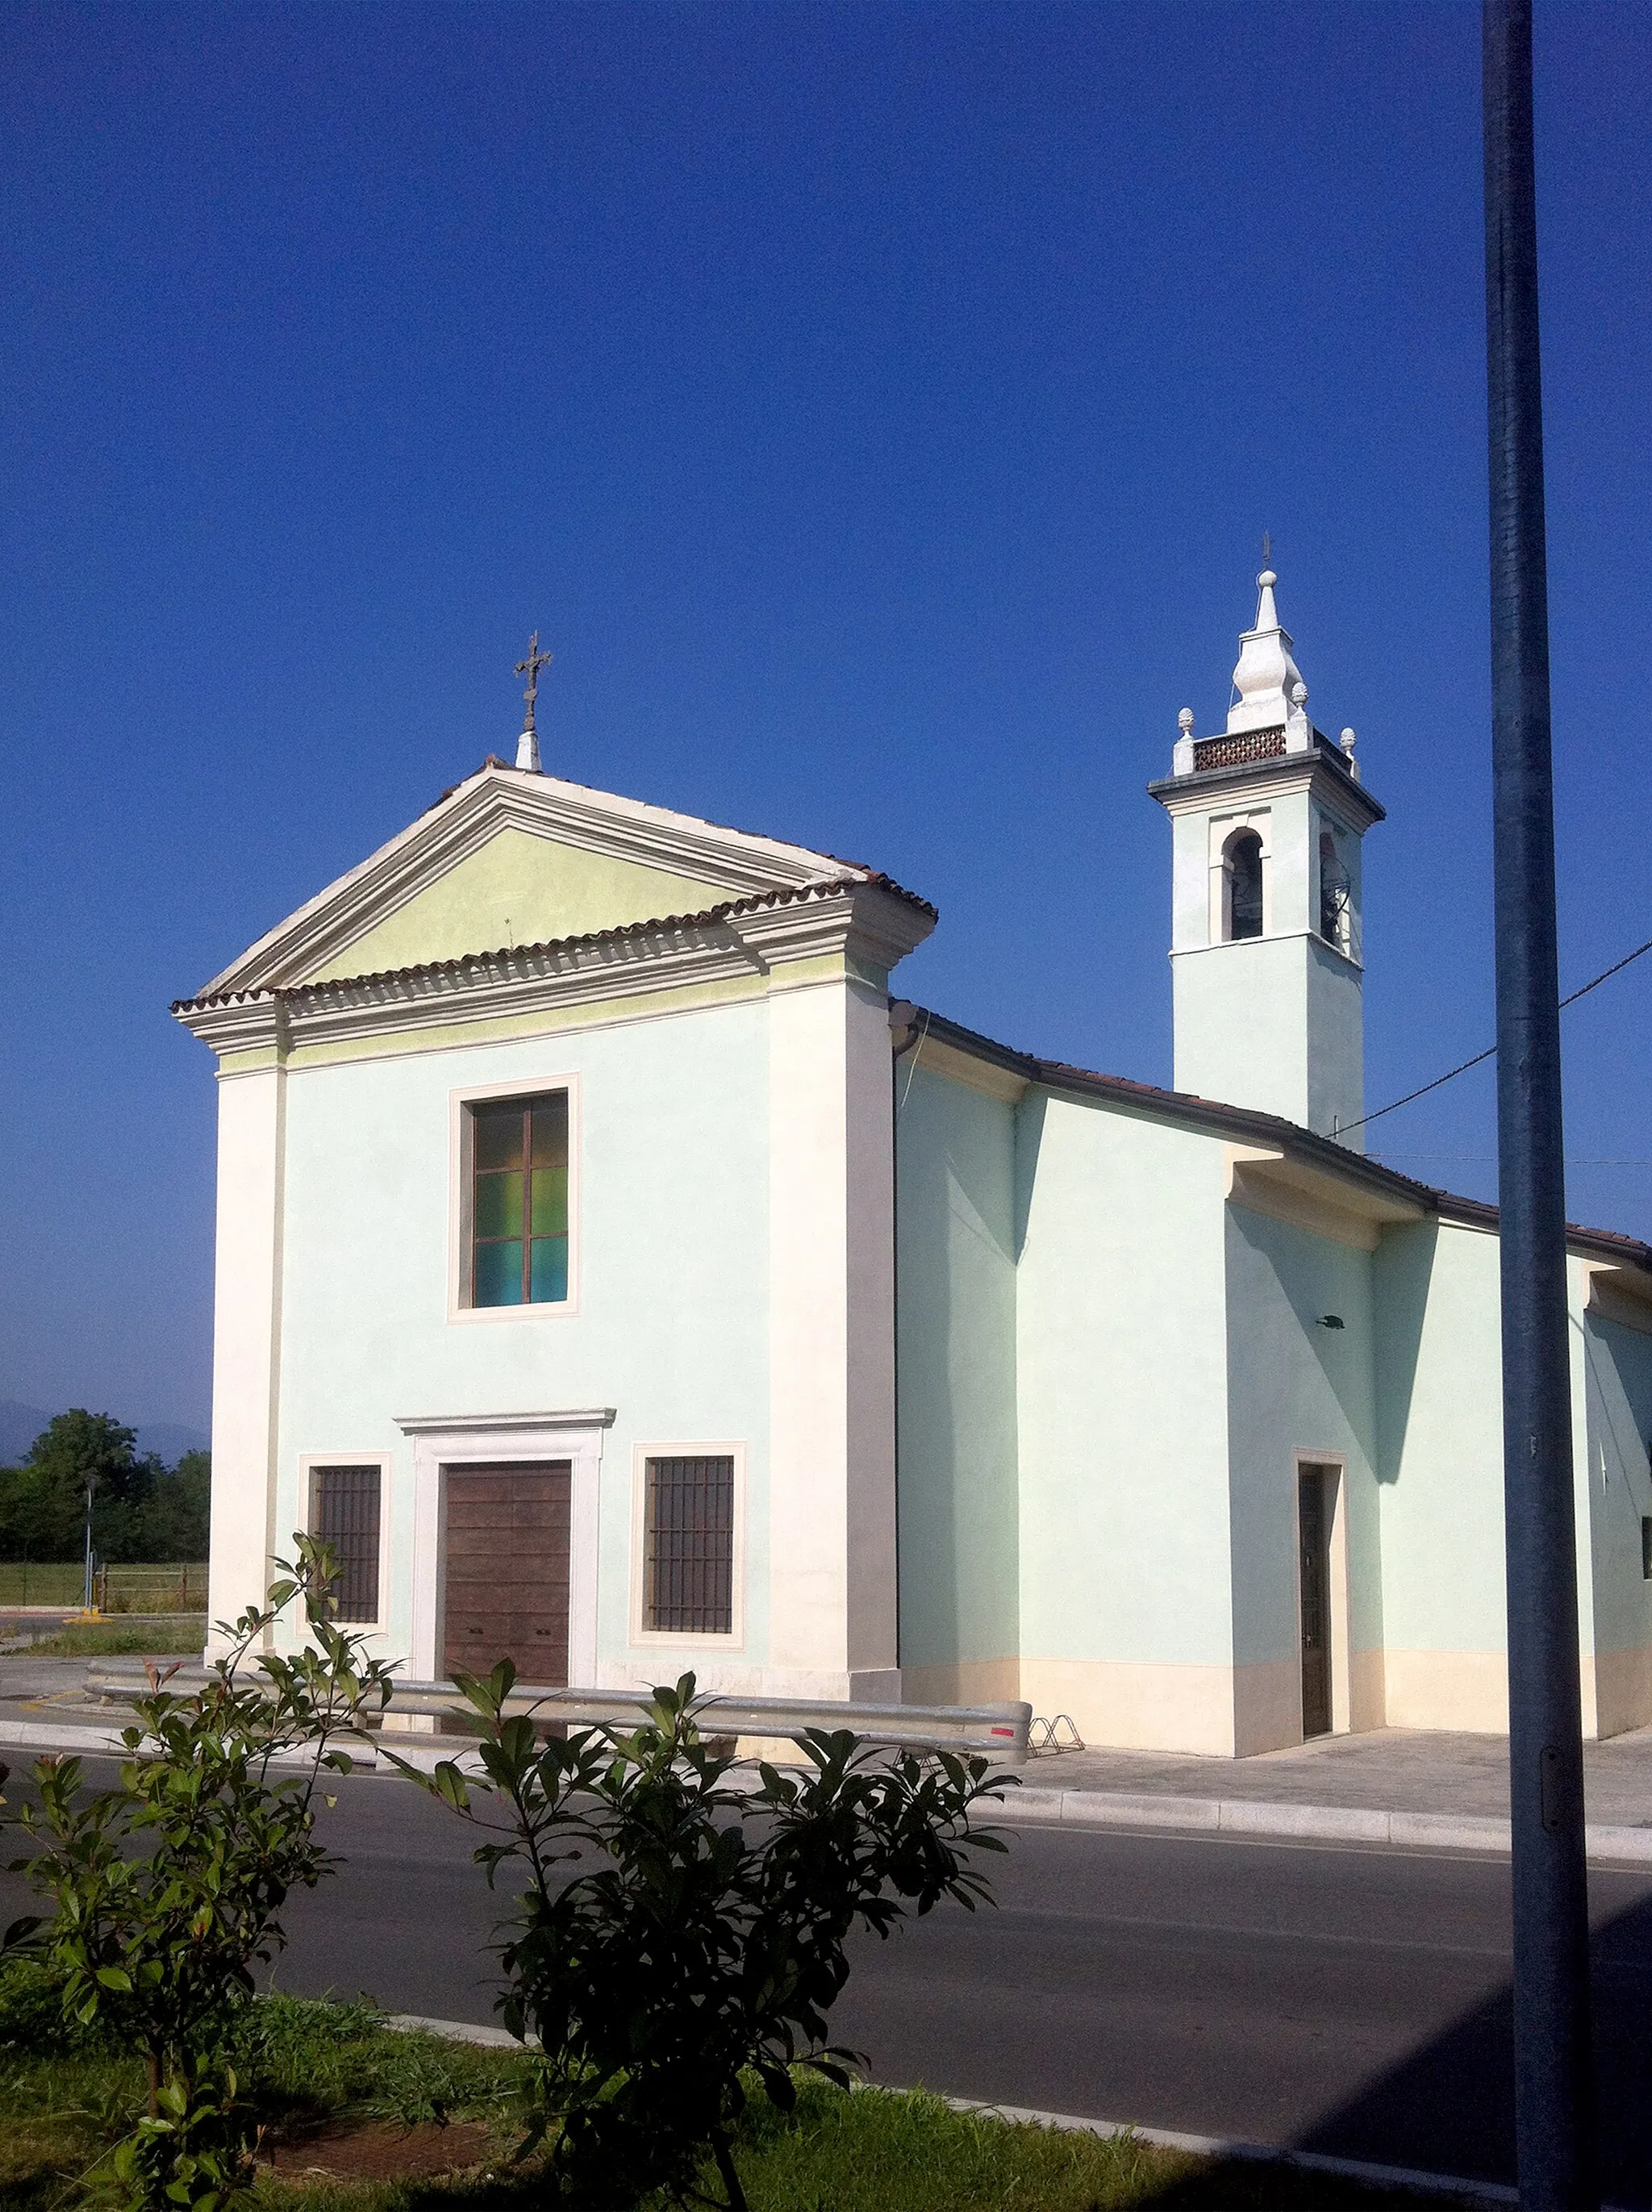 Image of Borgosatollo